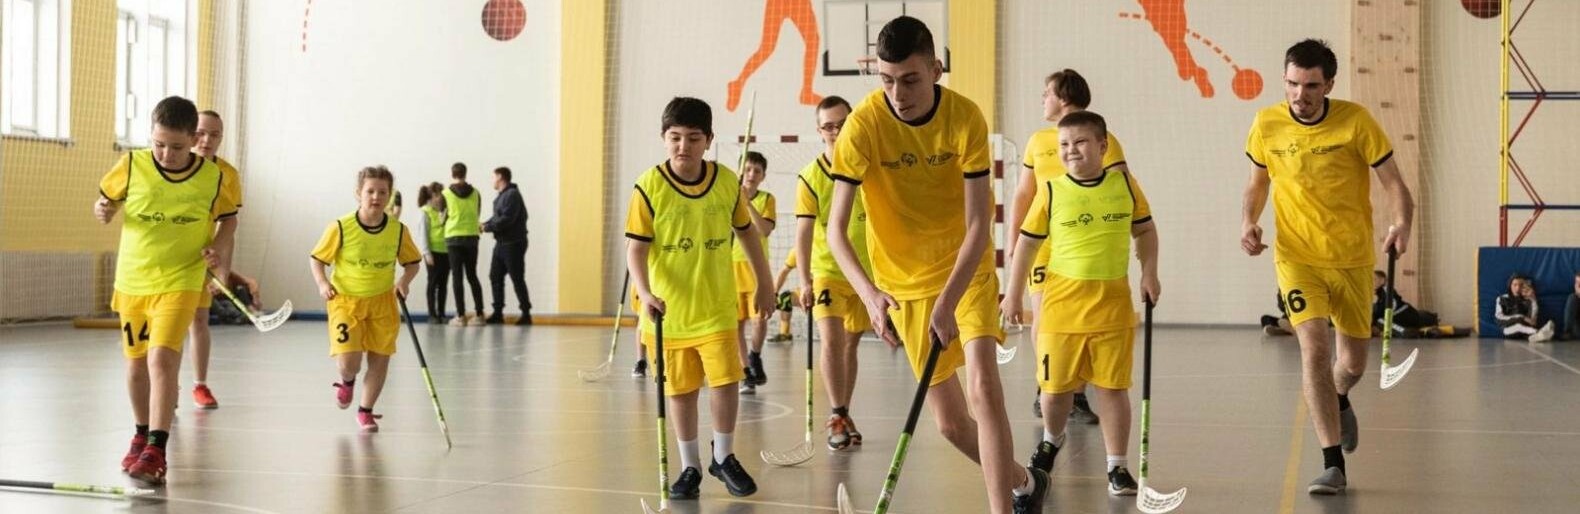 В Ростове провели турниры по мини-футболу и флорболу среди команд с особенными детьми